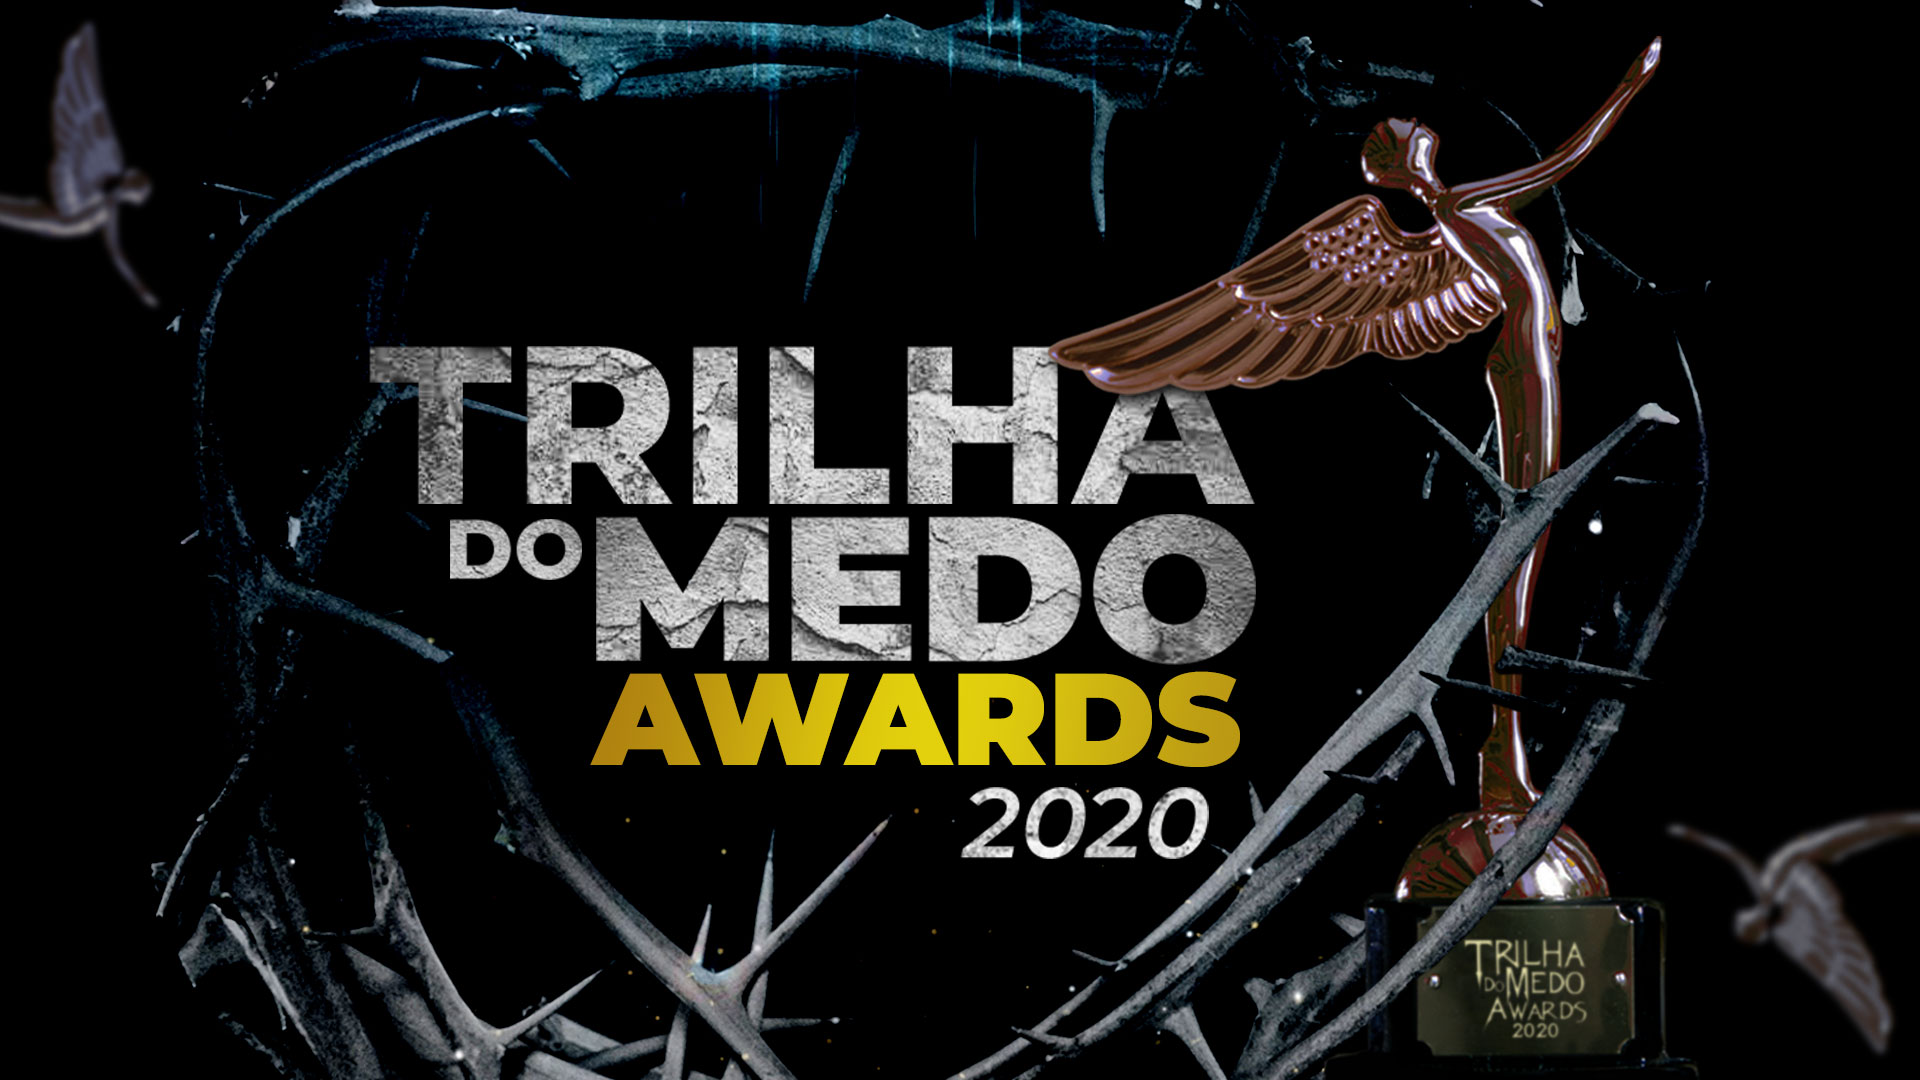 Trilha do Medo Awards 2020